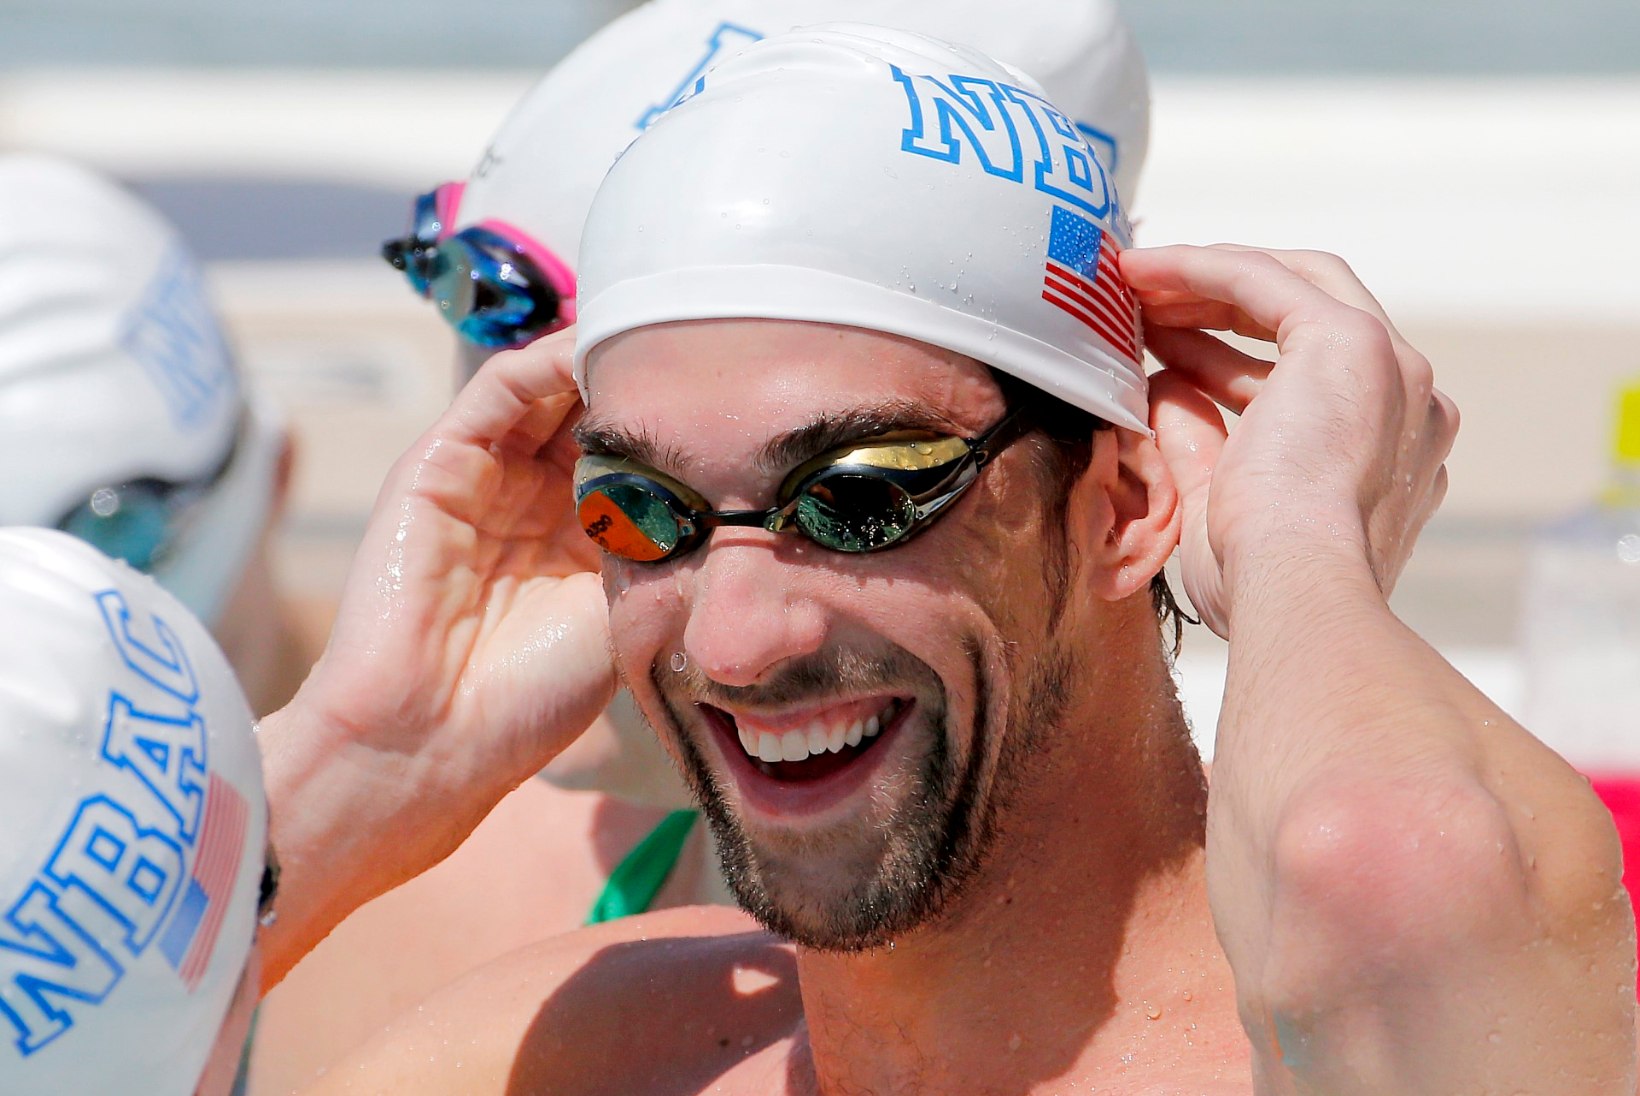 GALERII: Phelps tegi eduka tagasituleku, alistades ka Martin Liivamäe